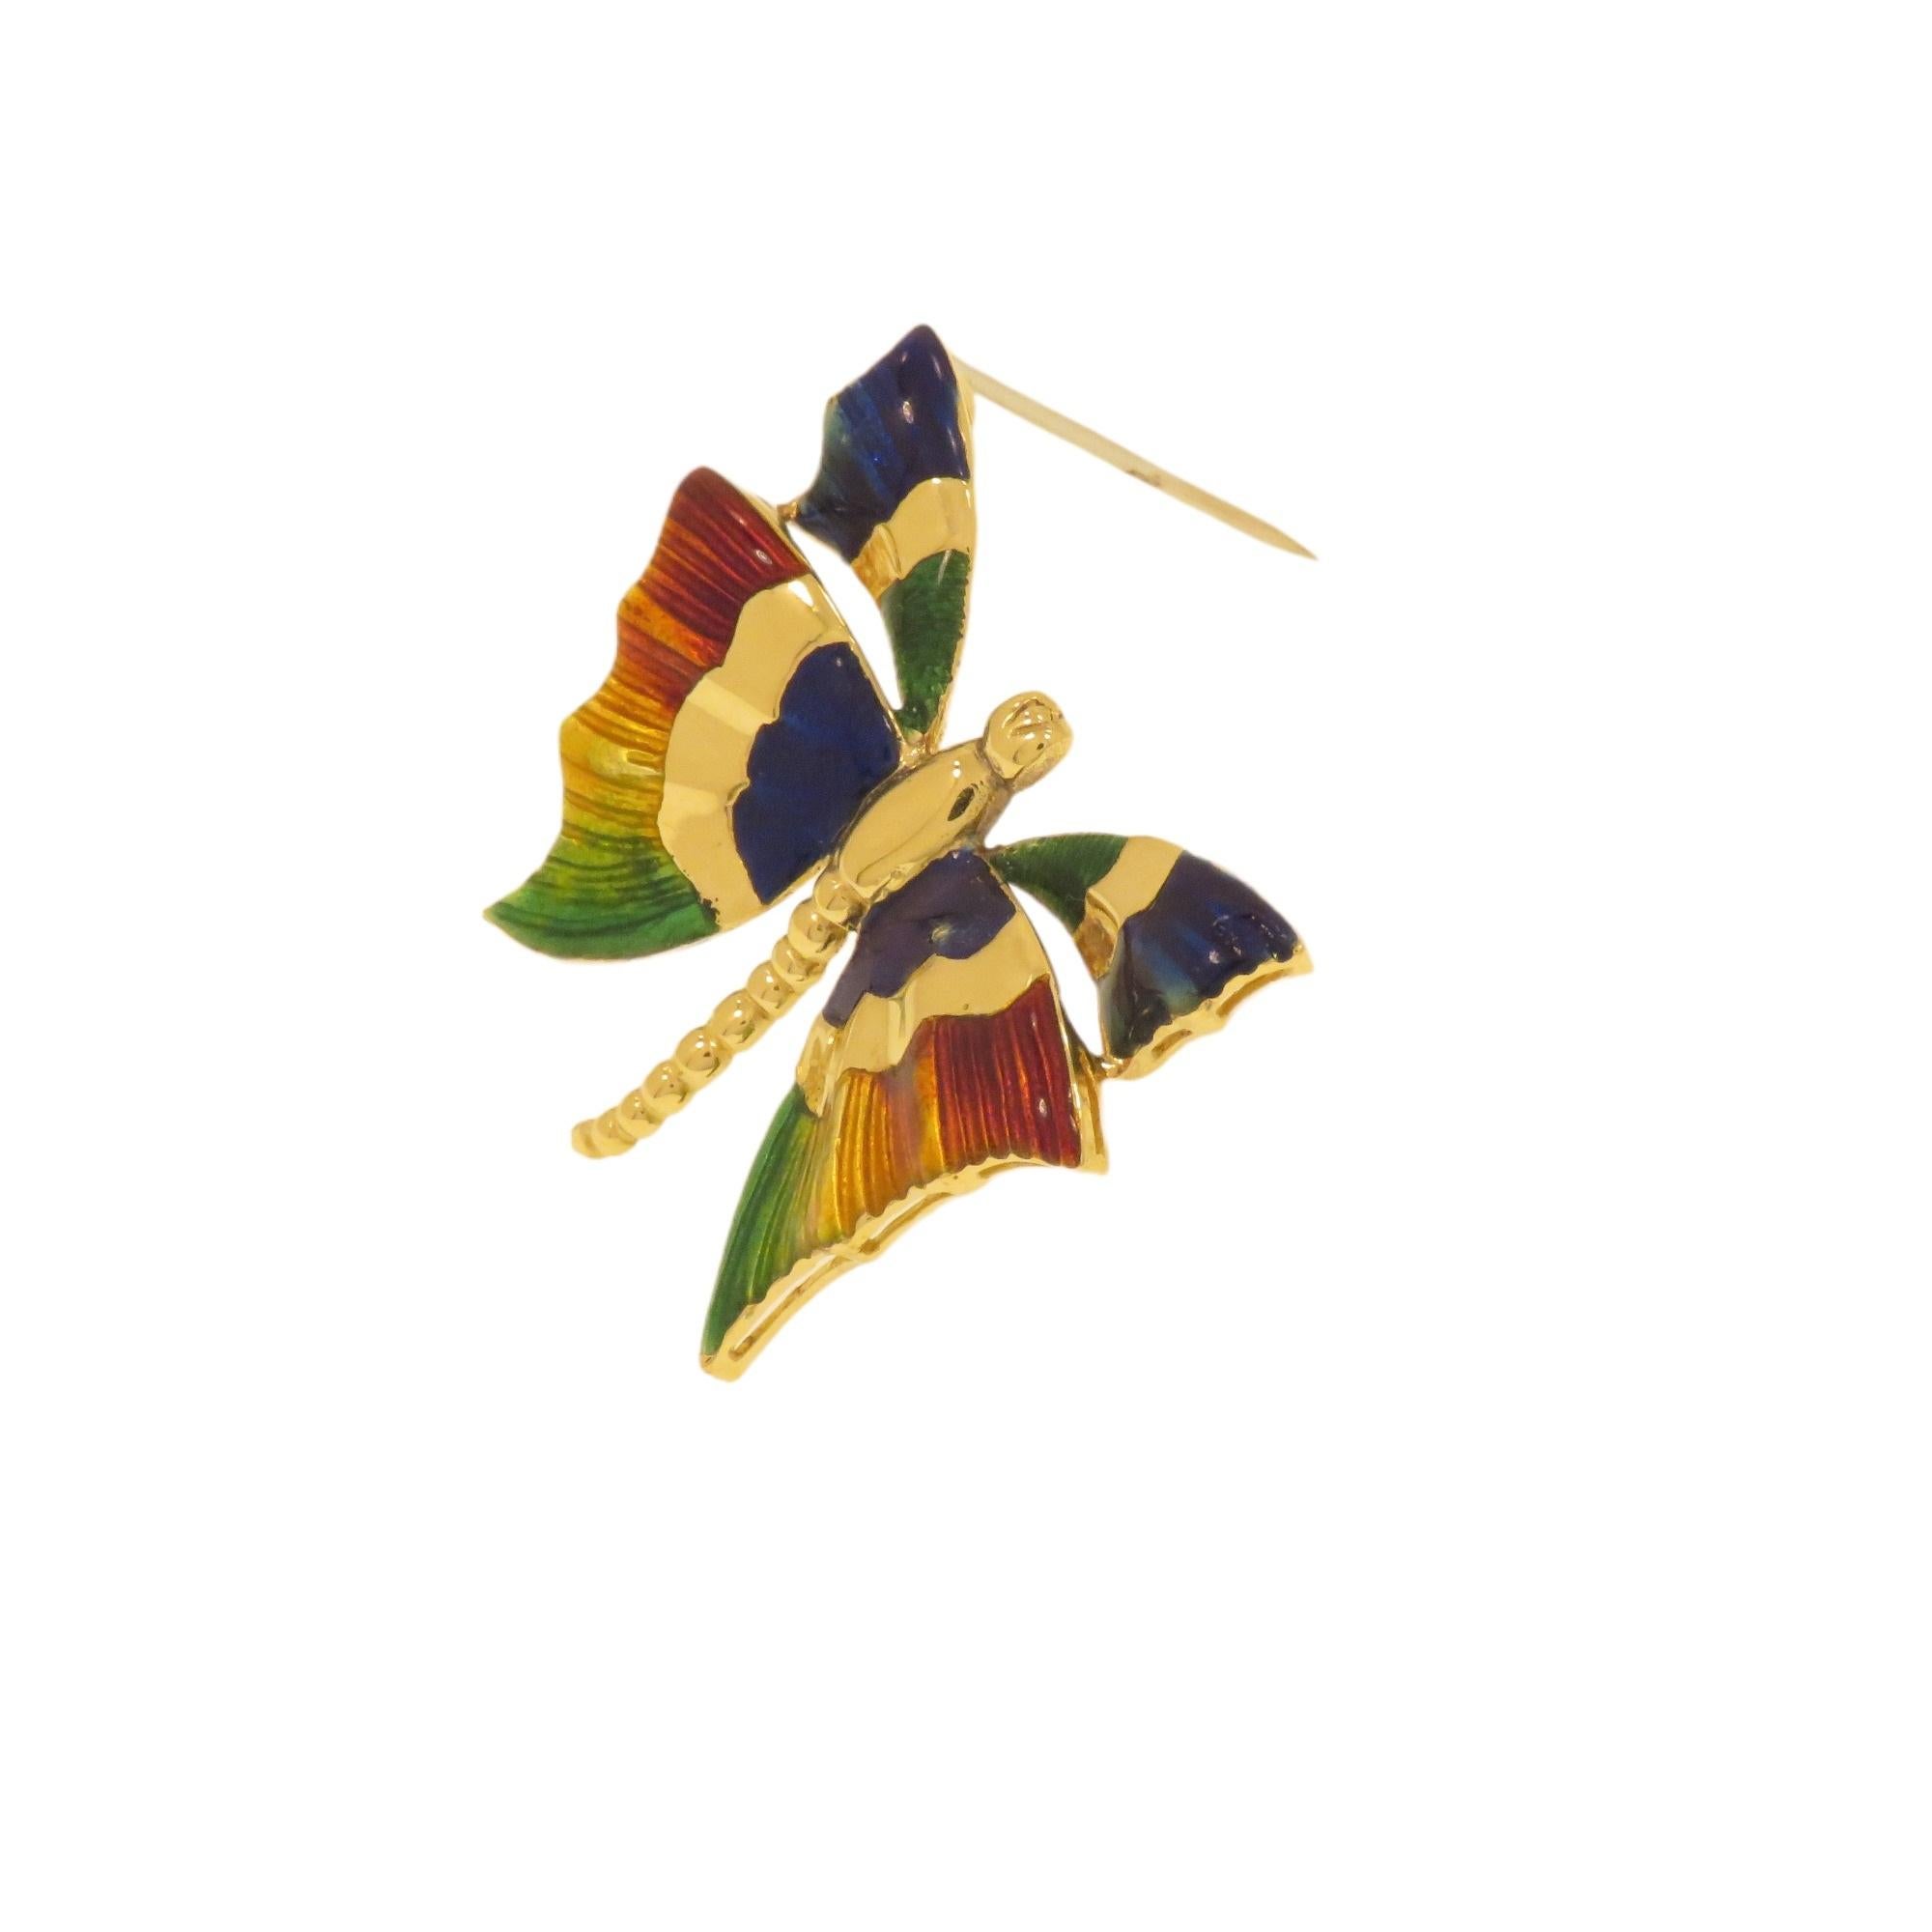 Elegante spilla d'epoca a forma di farfalla realizzata in oro giallo 18 carati. Le ali sono smaltate a fuoco in più colori. Realizzata a mano in Italia nel 1970 circa. Le dimensioni della spilla sono 38x32 mm / 1.496x1.259 inches e pesa 11.6 grammi.